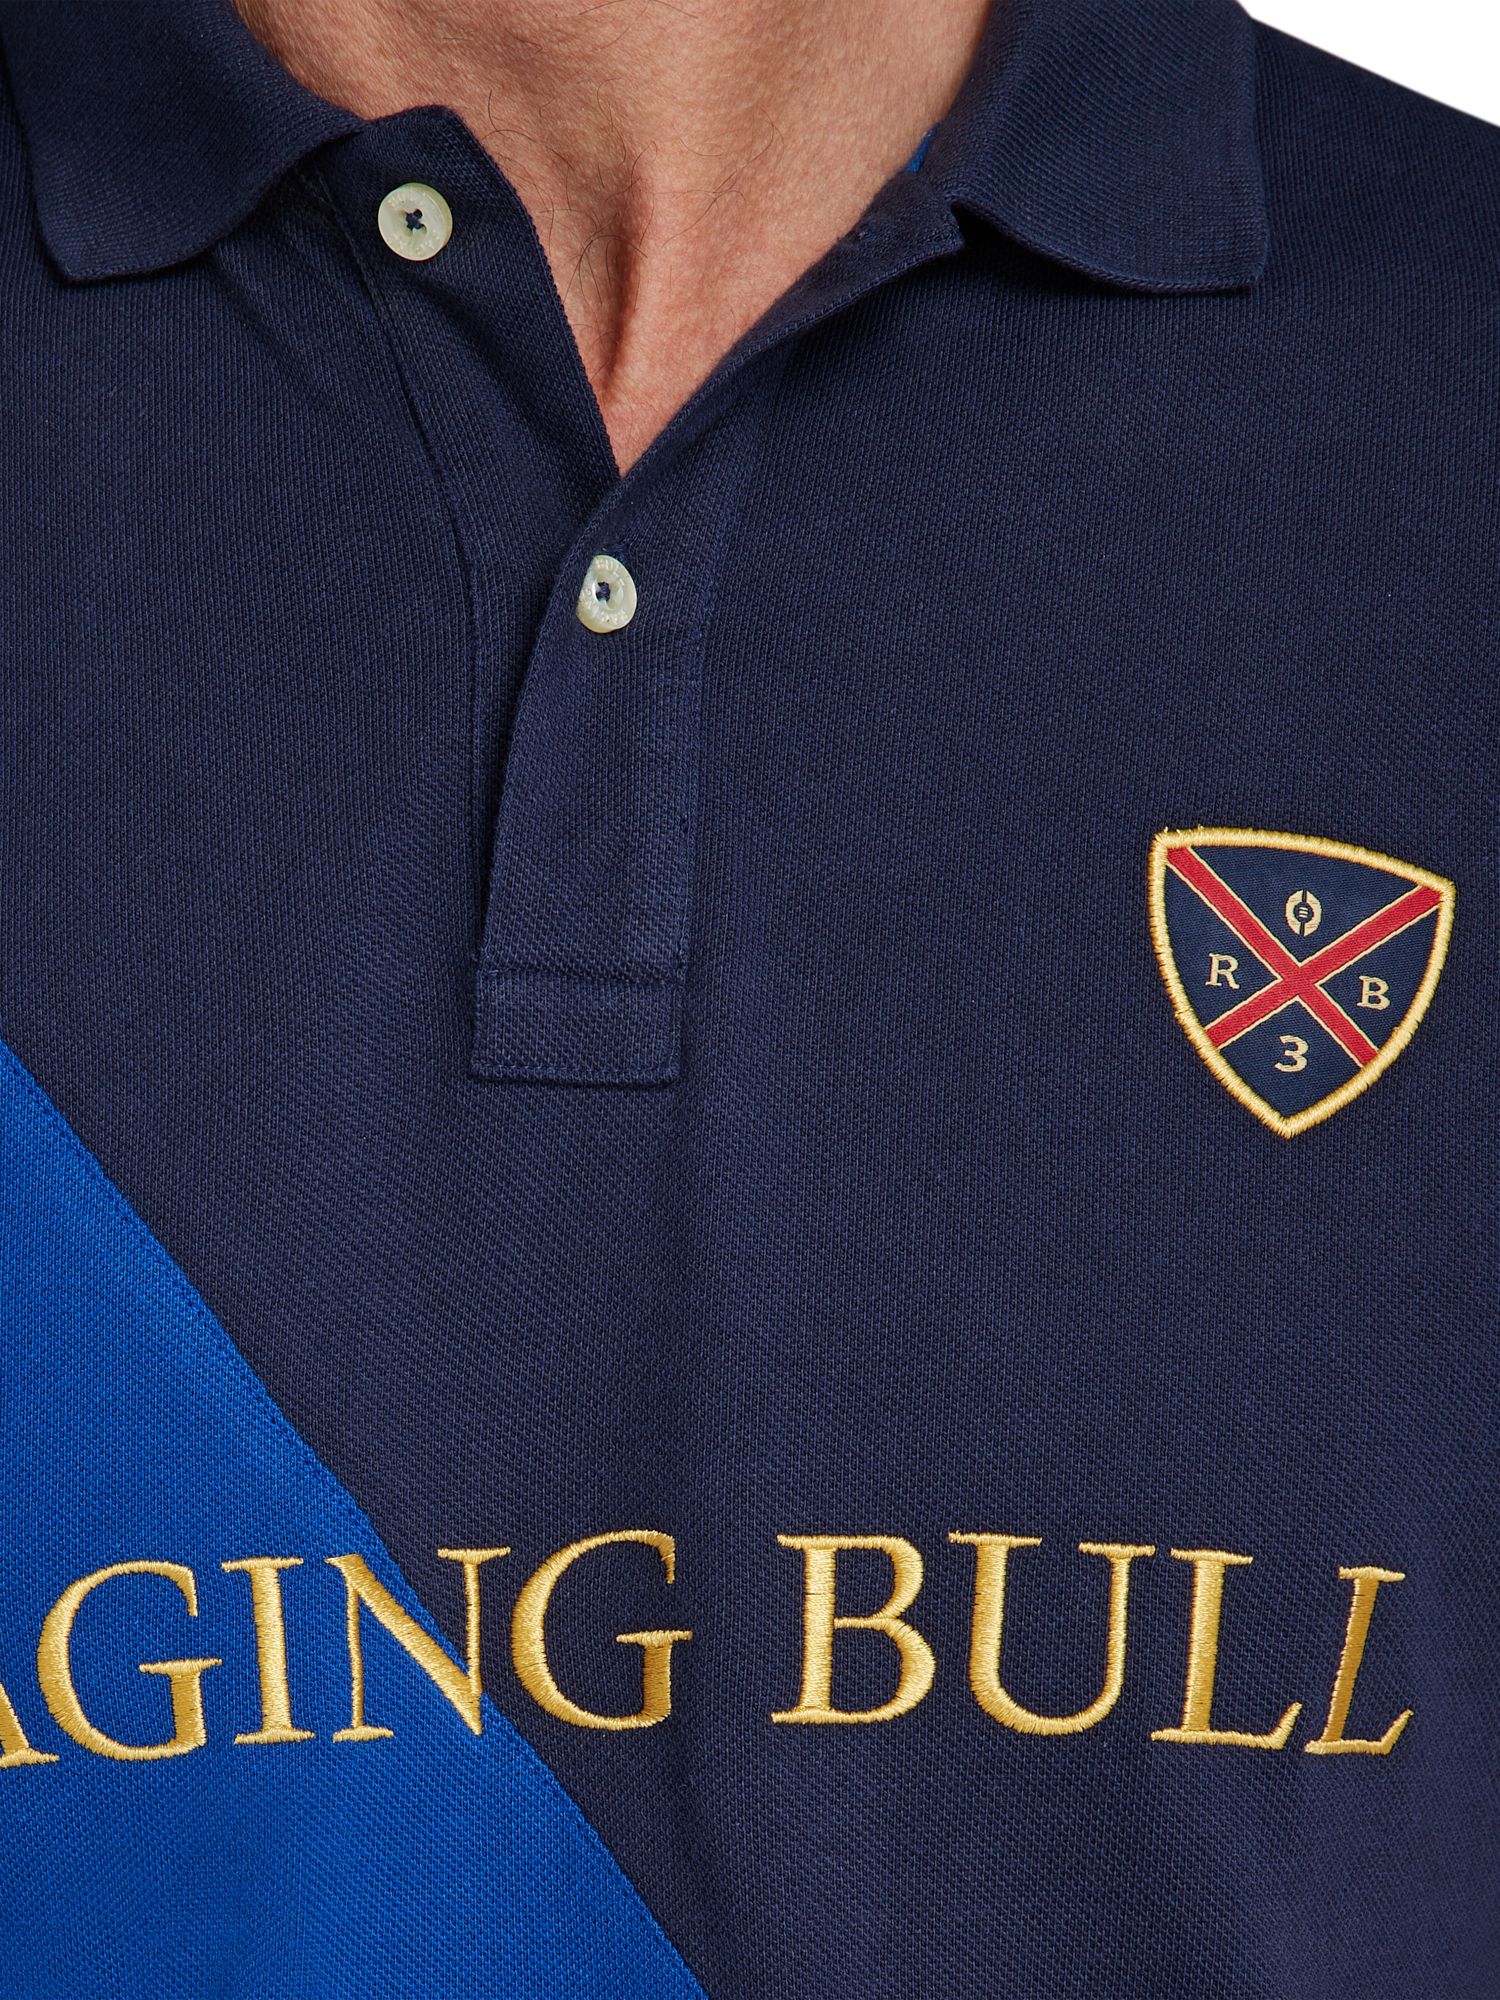 Raging Bull Diagonal Cut & Sew Pique Polo Shirt, Blue/Multi, XXXXXXL